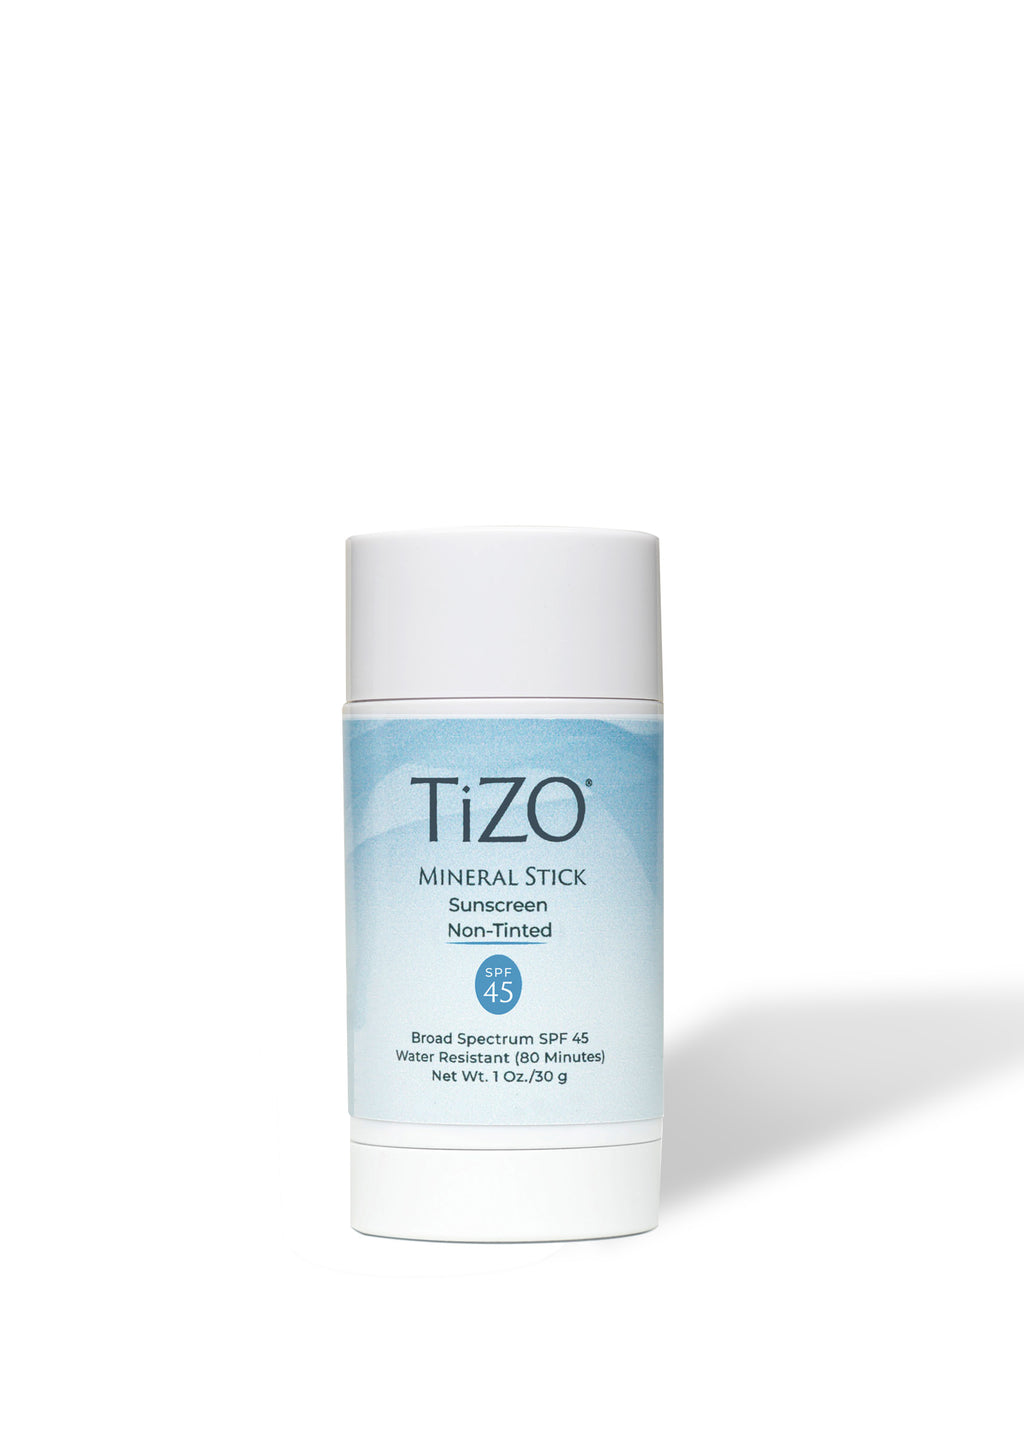 TiZO mineral stick non-tinted